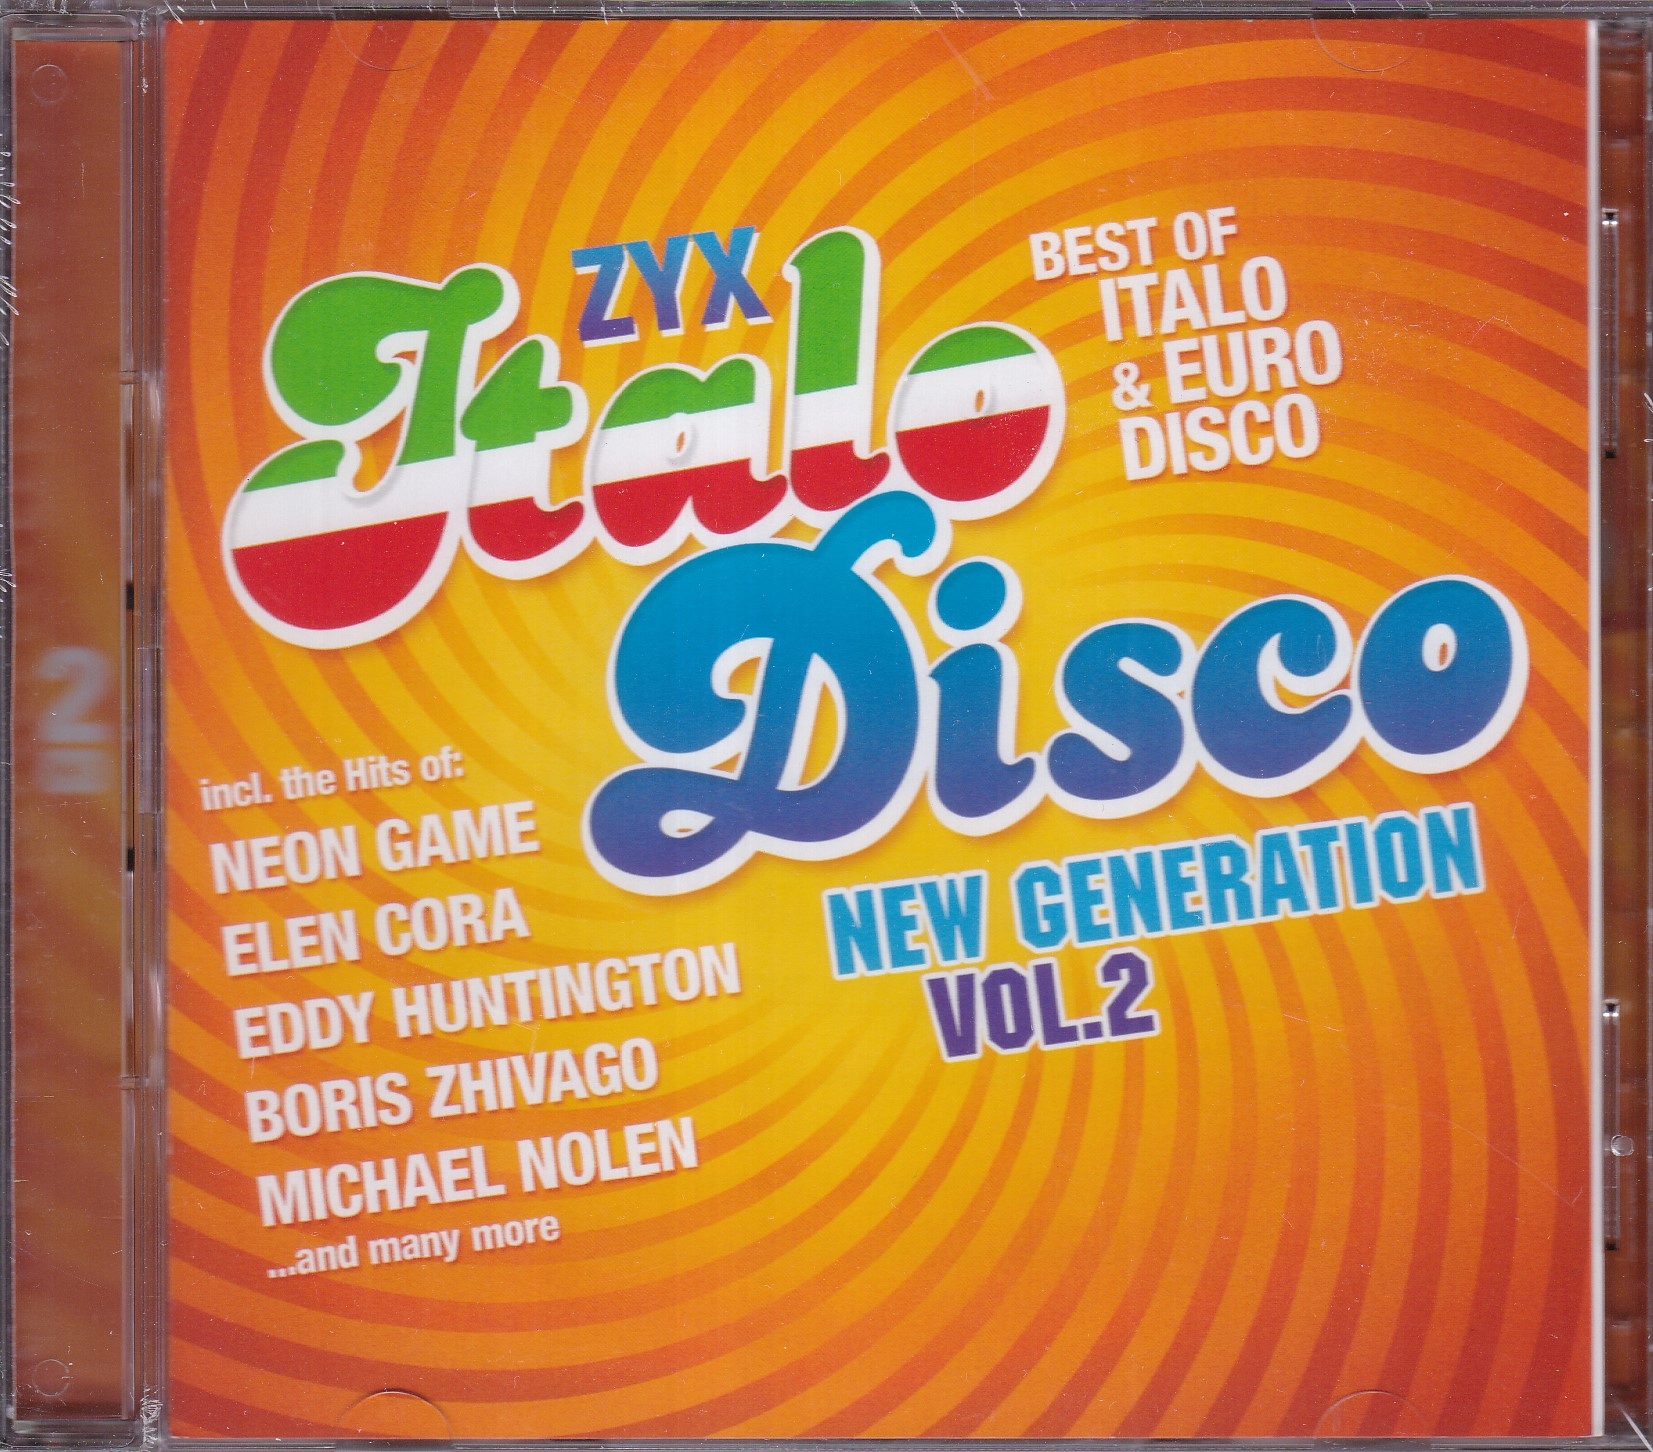 Italo disco new mp3. Italo Disco New Generation Vol. ZYX Italo Disco New Generation:Vinyl Edition Vol.2. 2023 - ZYX Italo Disco New Generation Vol.22 (2cd). ZYX Italo Disco New Generation.